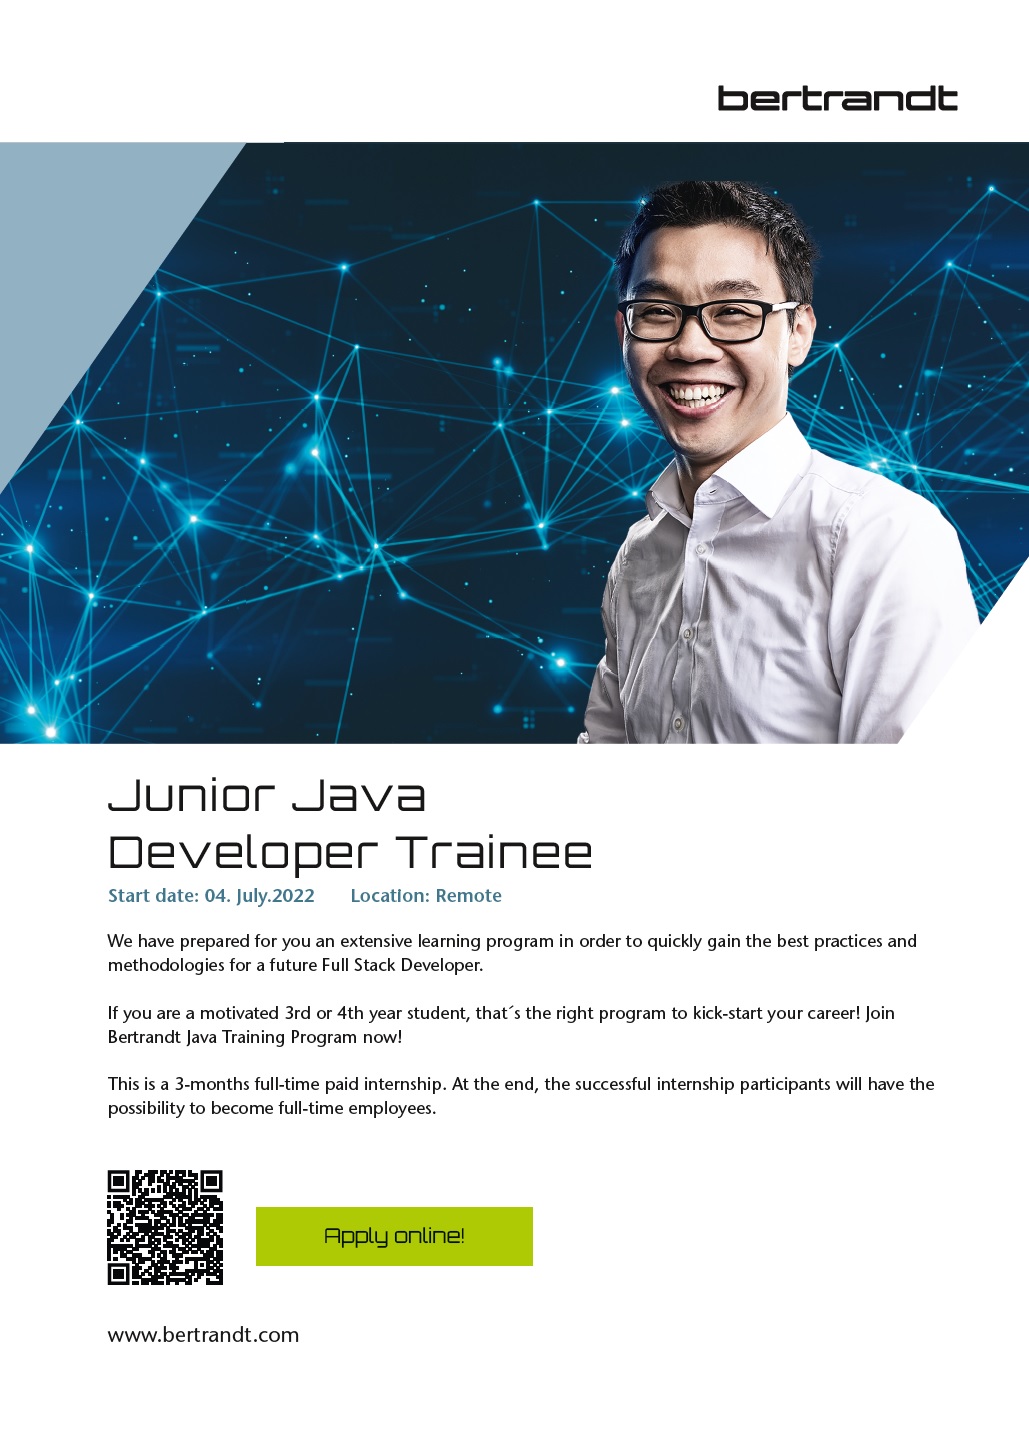 Bertrandt Java Training Program